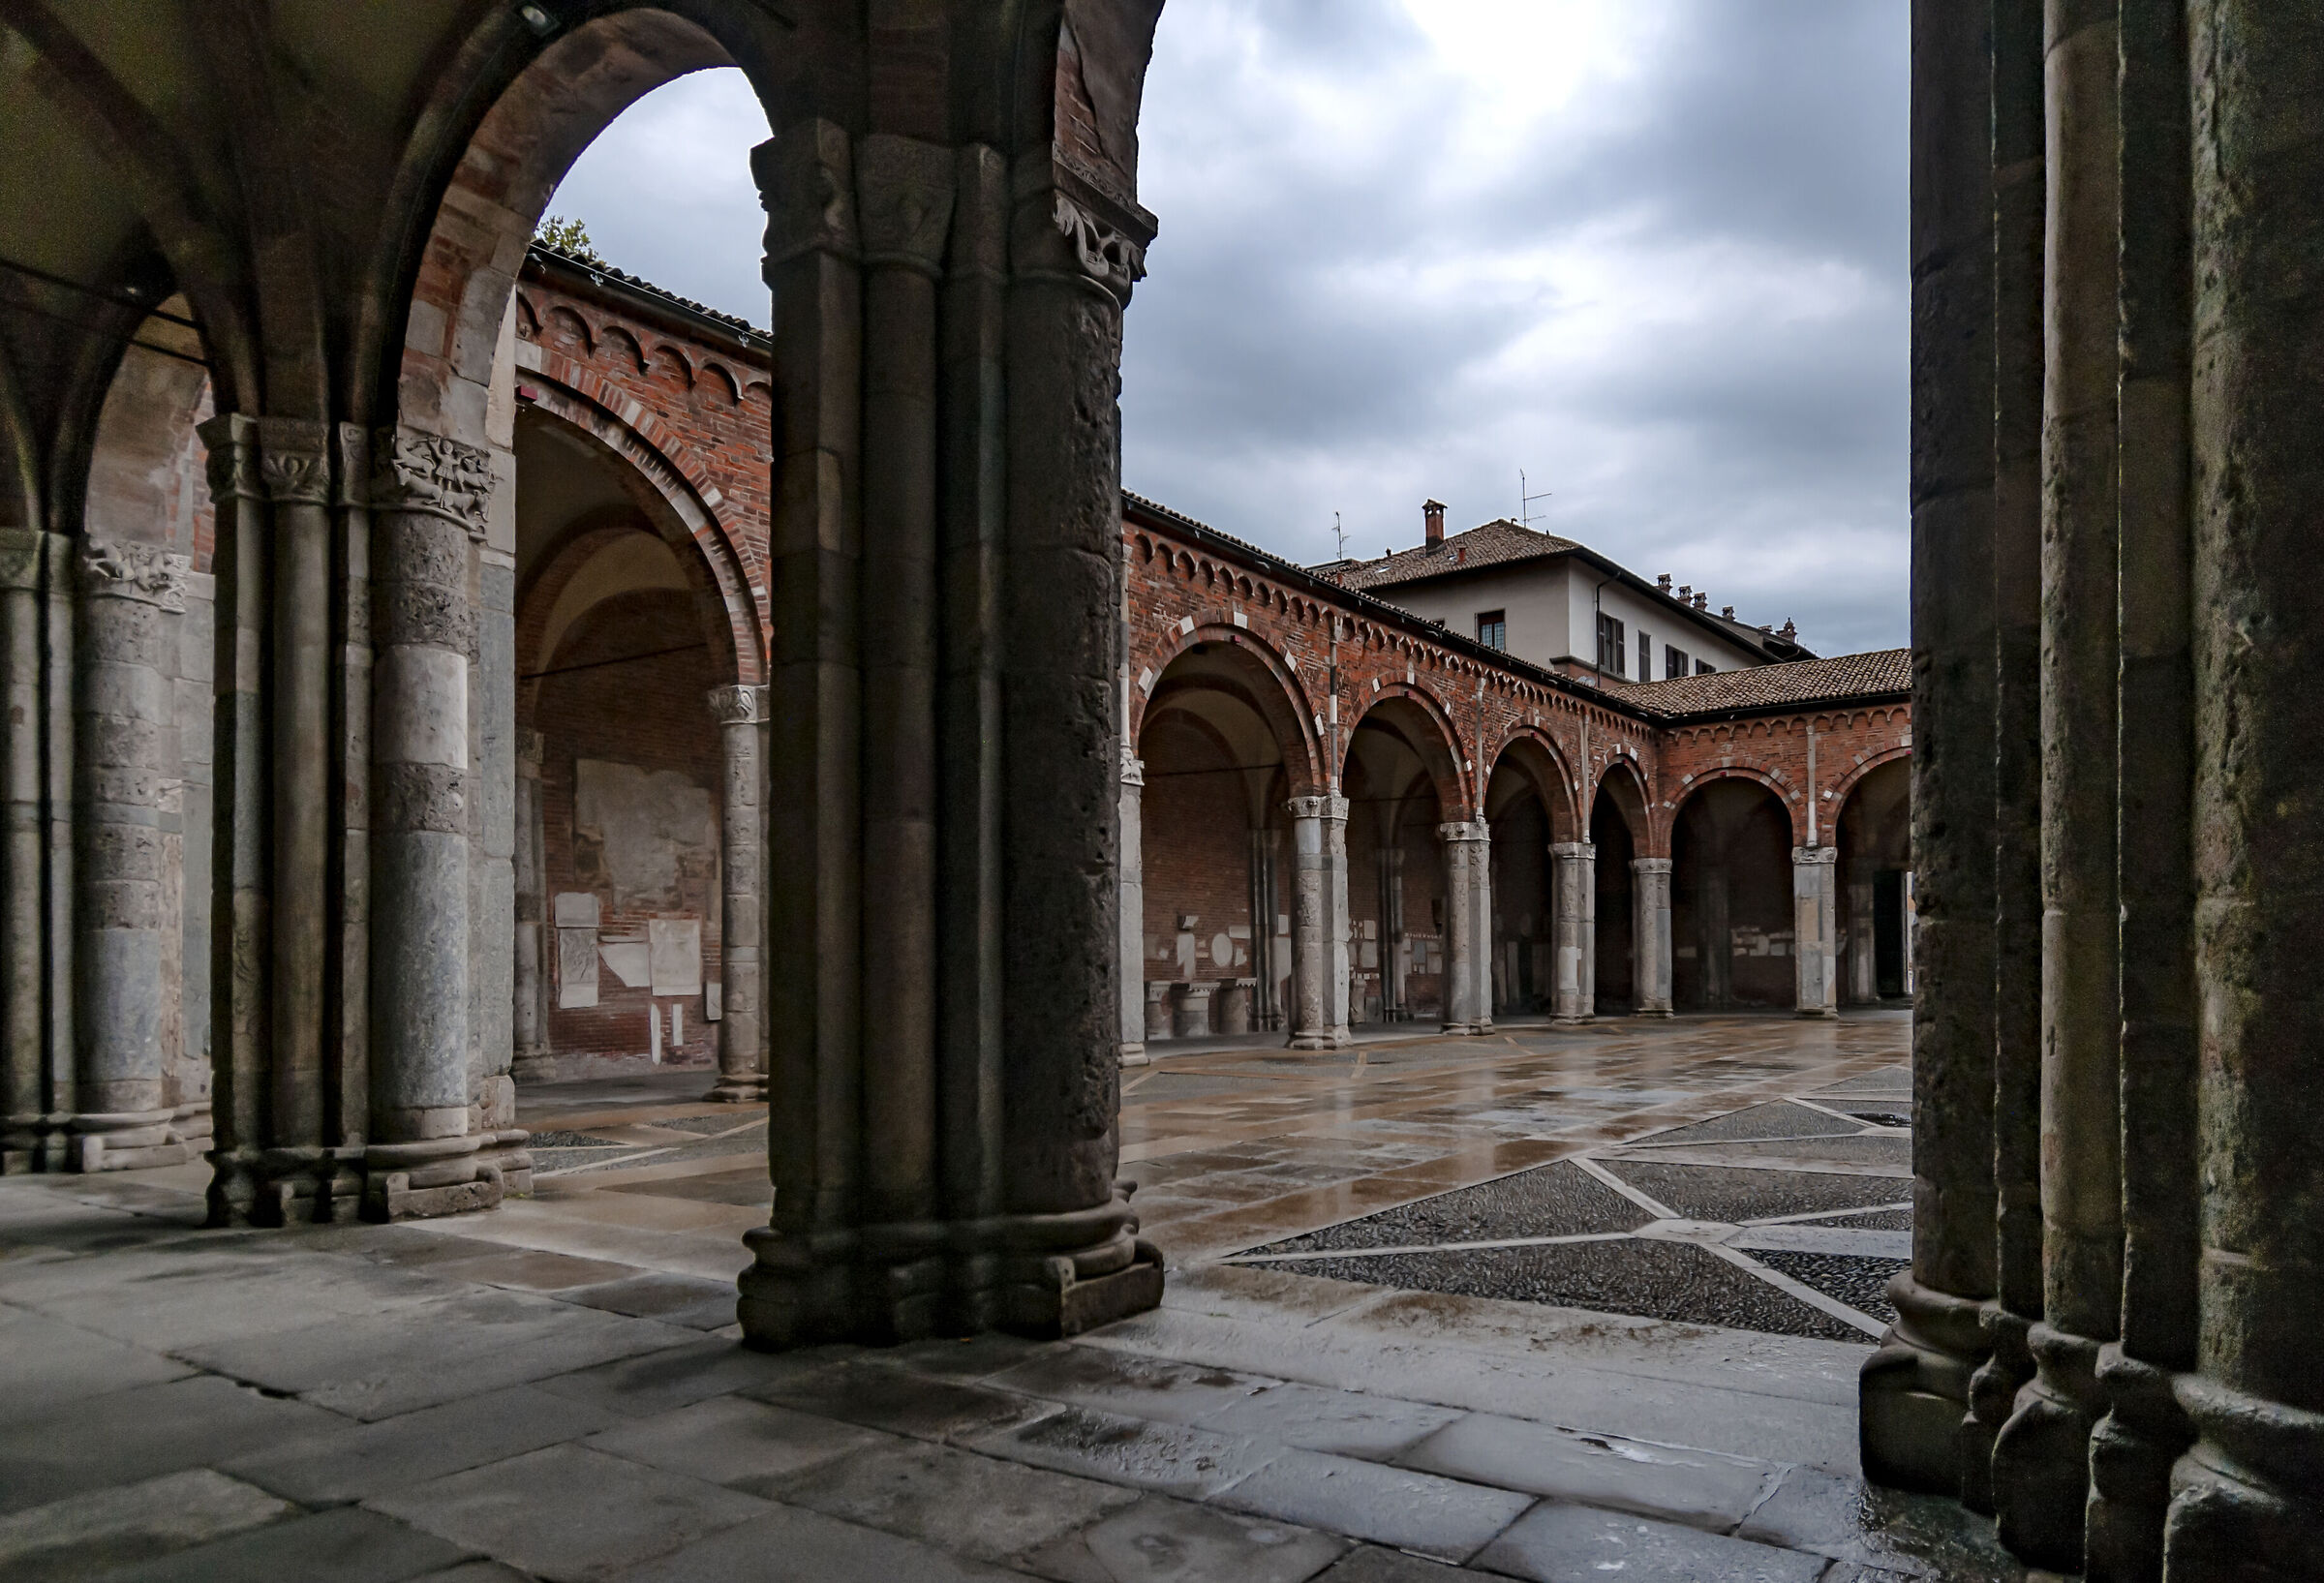 The quadriportico of Sant'Ambrogio...